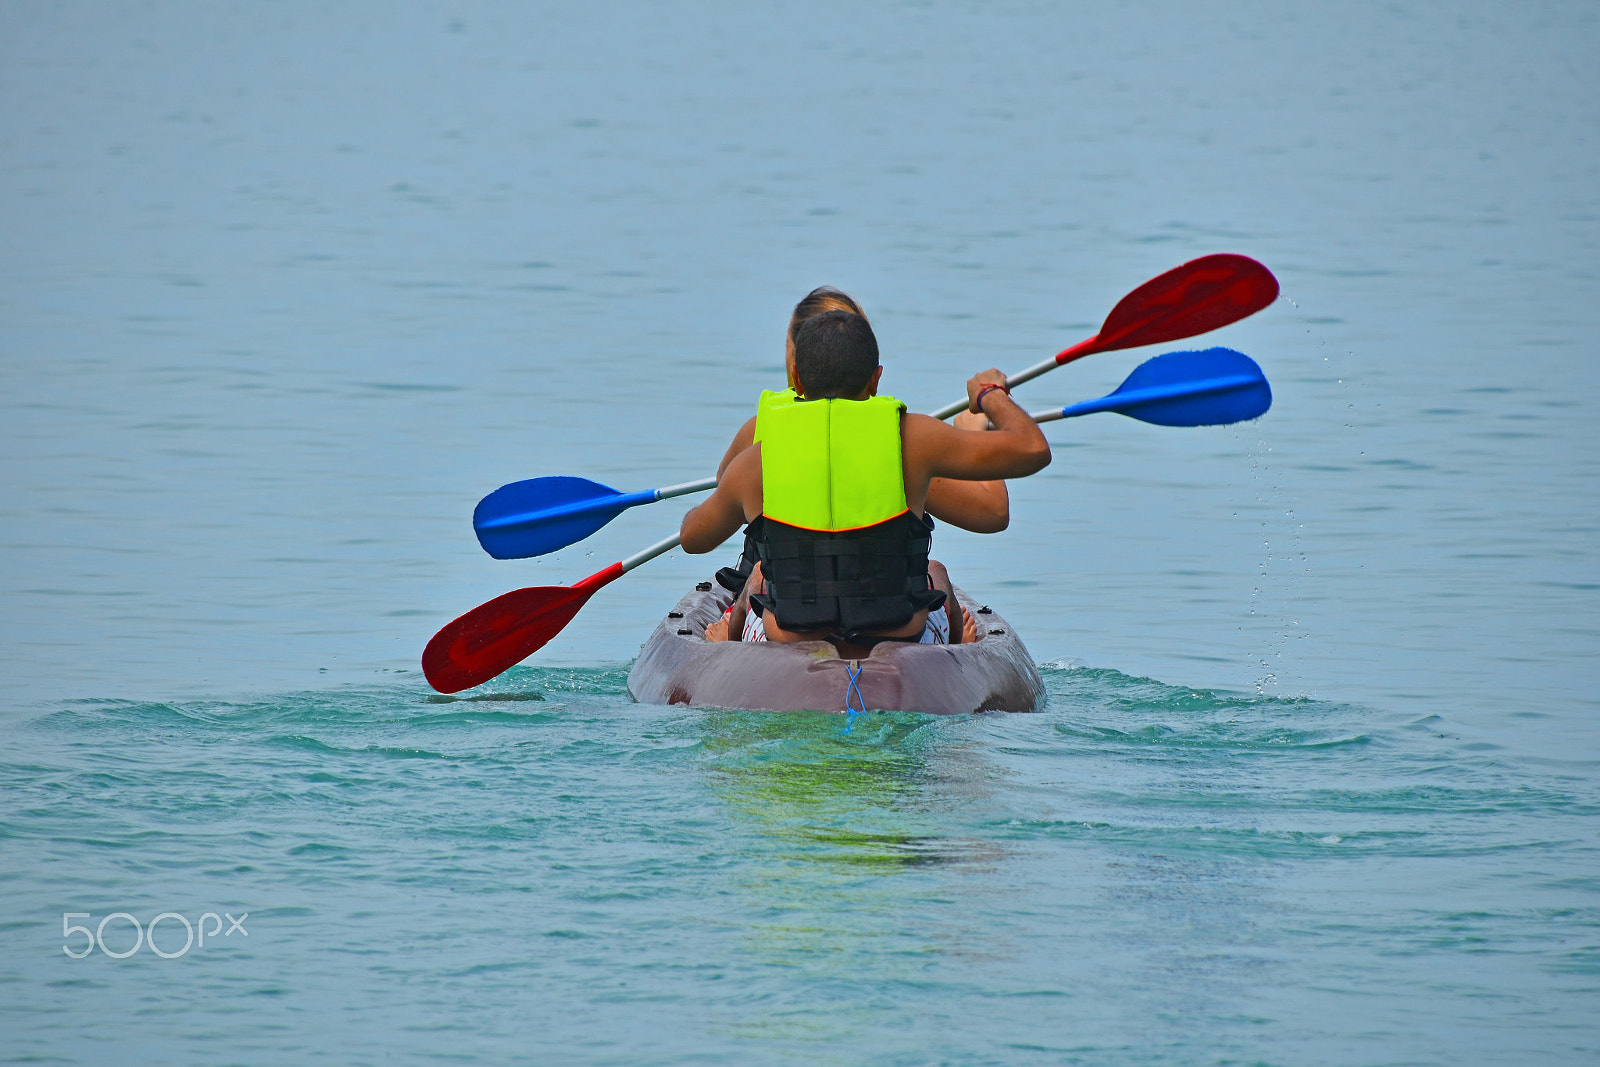 Nikon D5500 + Nikon AF-S DX Nikkor 18-300mm F3.5-6.3G ED VR sample photo. Two people kayaking in sea photography